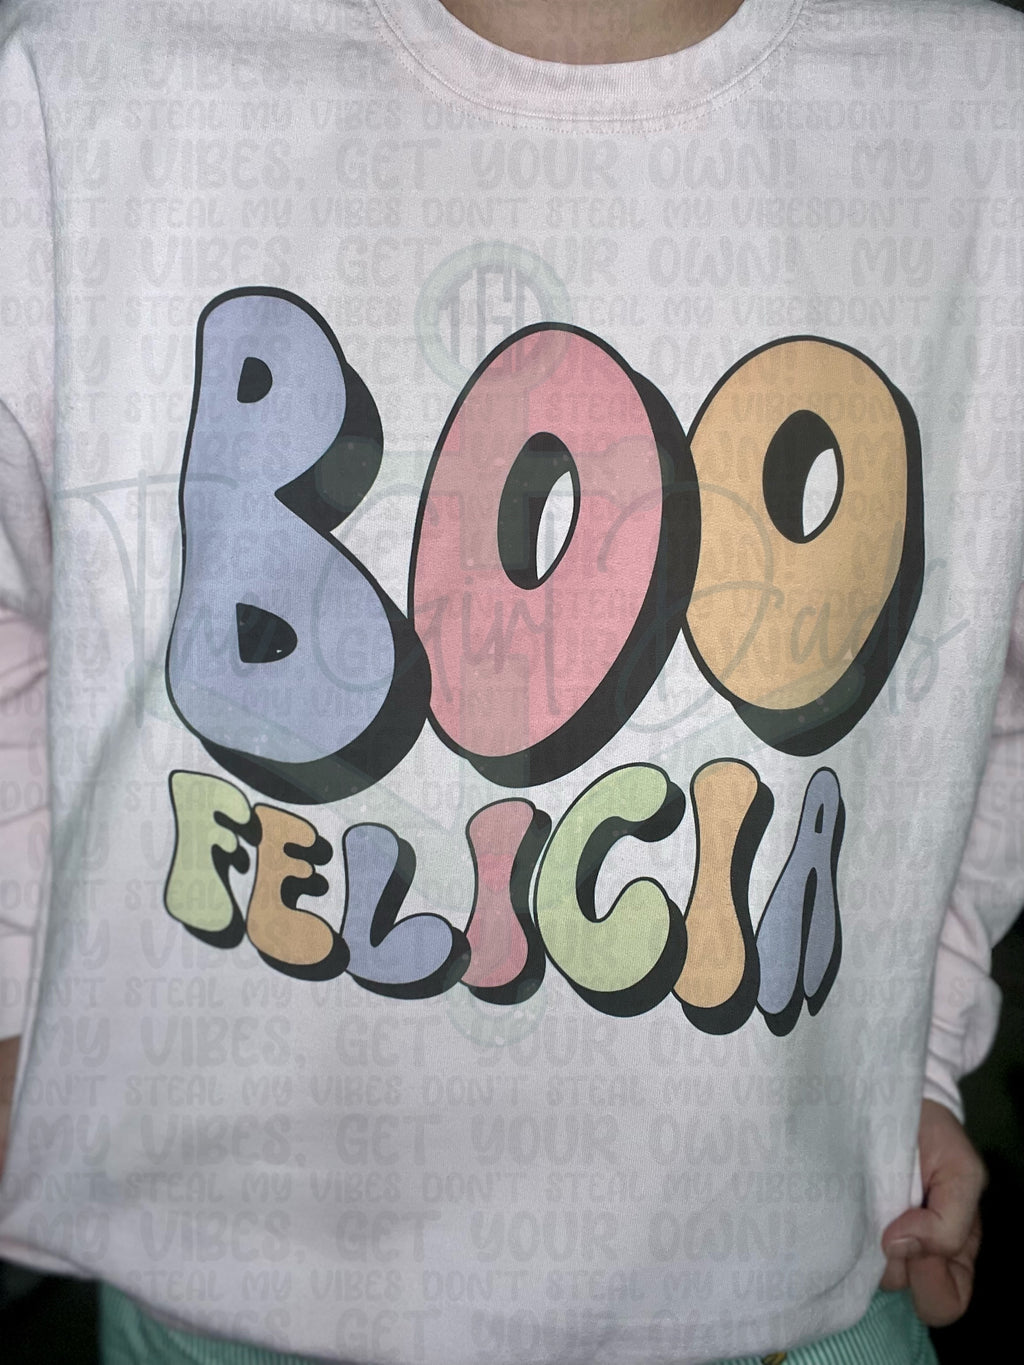 Boo Felicia Top Design